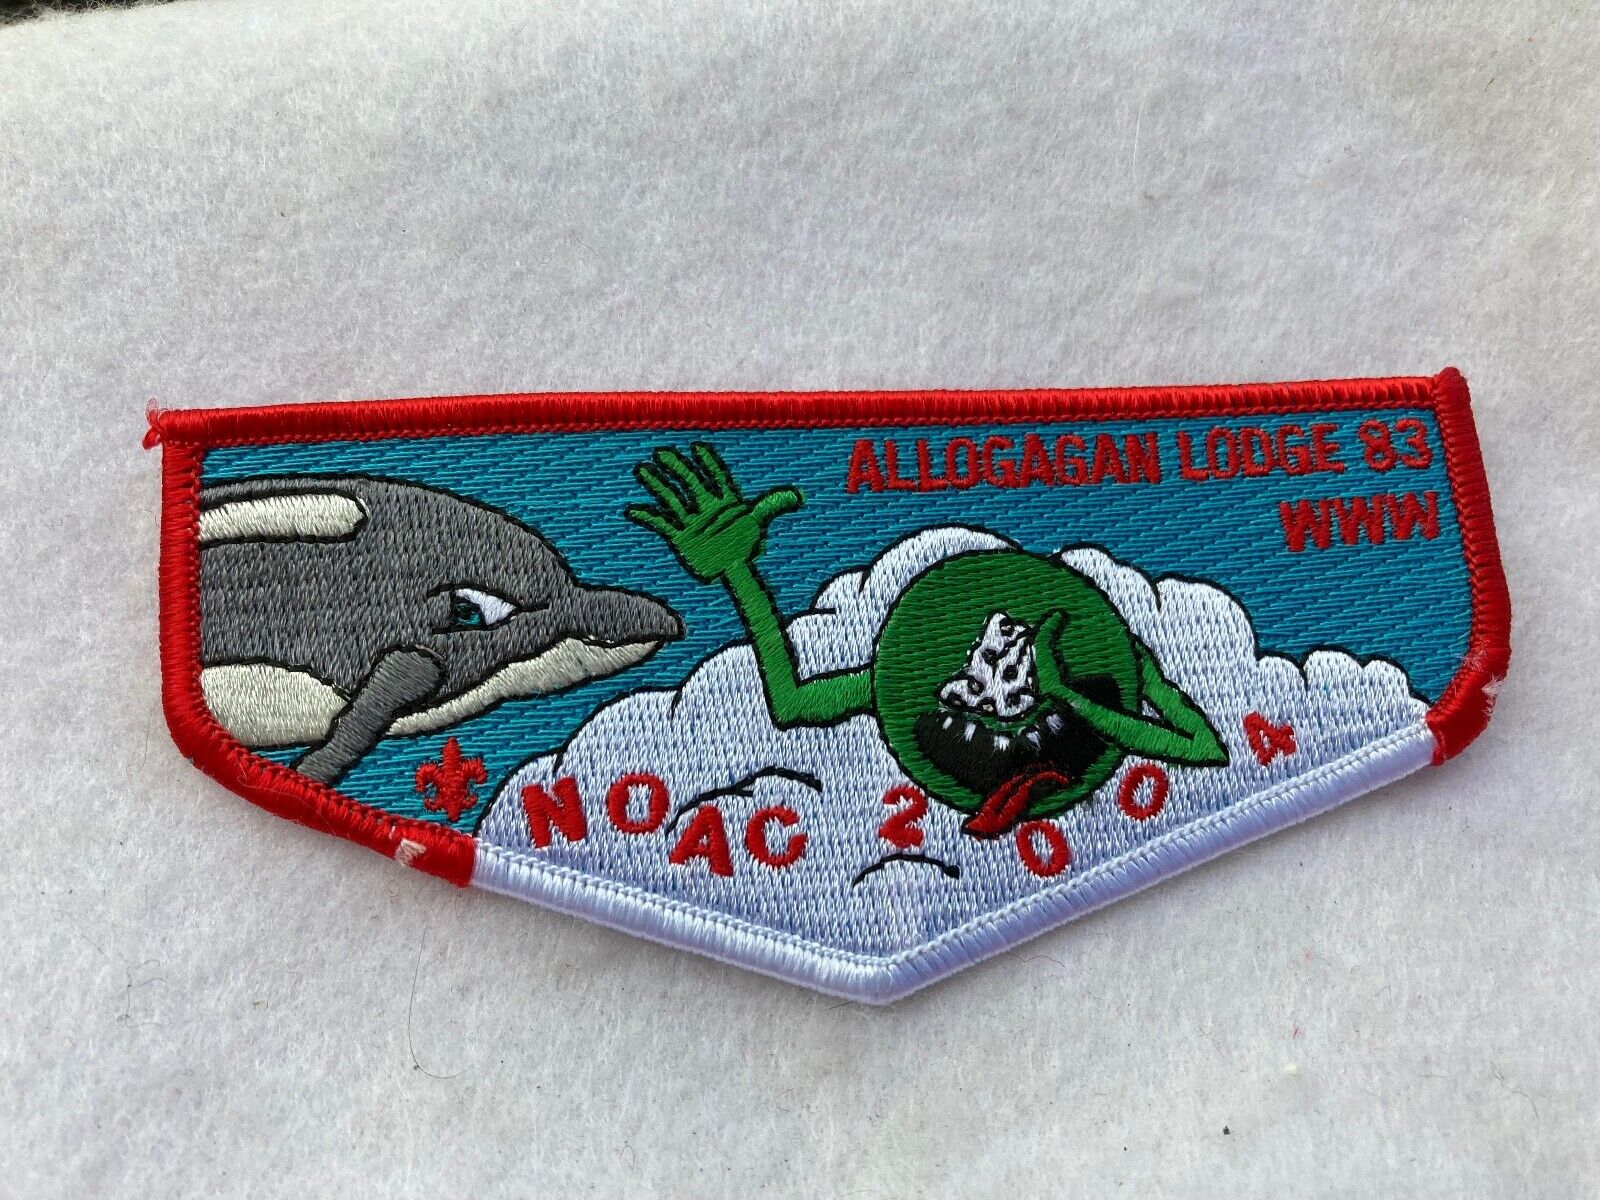 (mr14) Boy Scouts -   Allogagan Lodge 83 WWW. NOAC 2004 flap